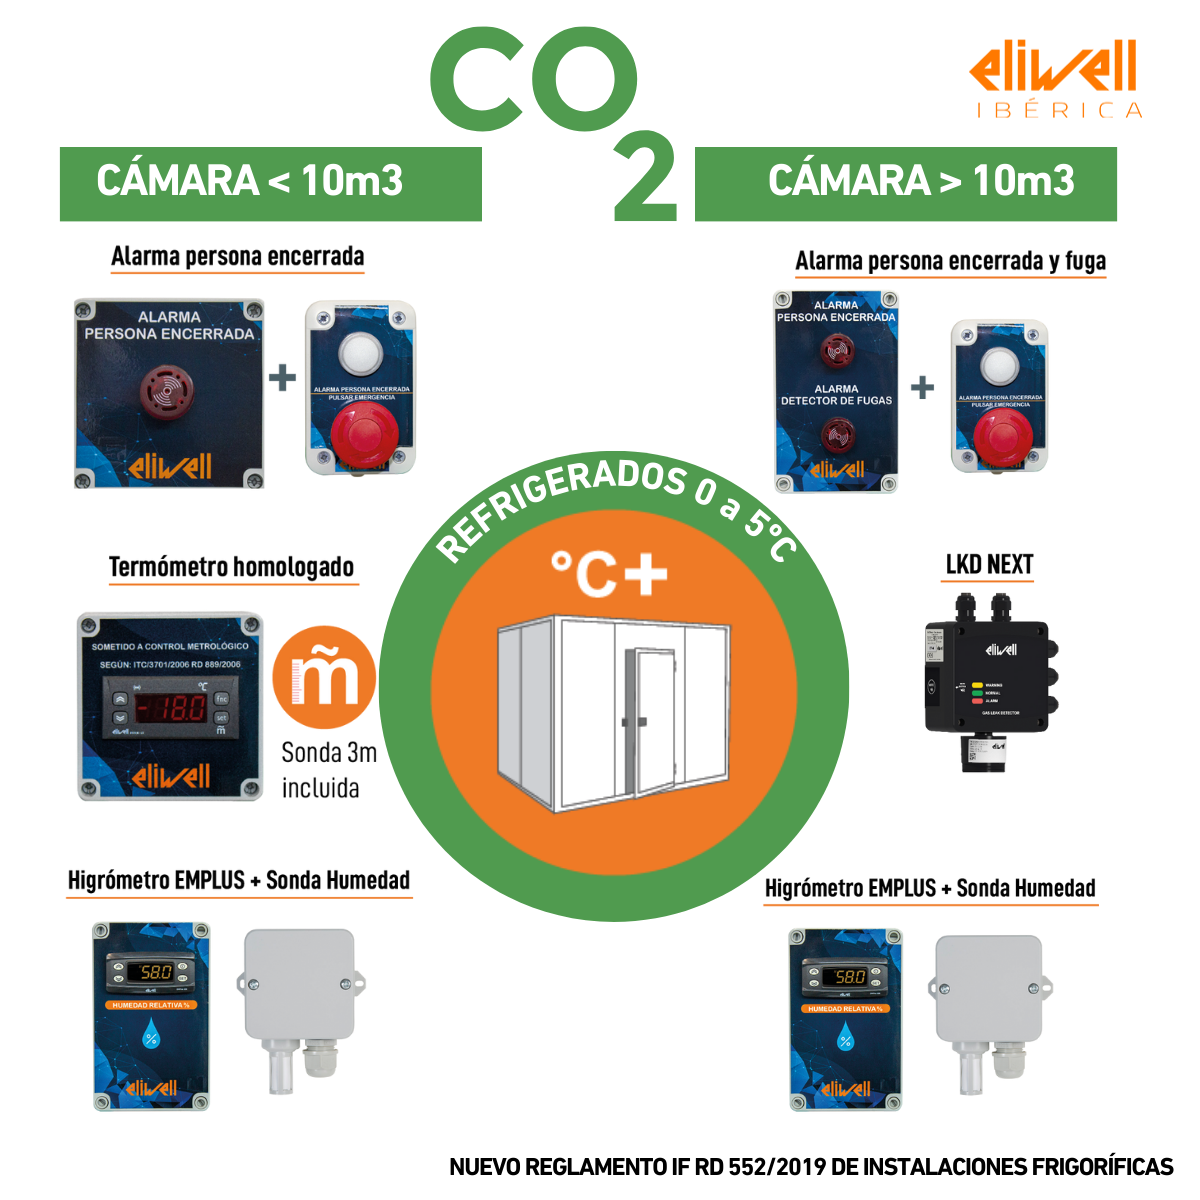 Imagen  con los sistemas de alarmas y señalización que exige la normativa vigente para cámaras frigorificas en España con CO2